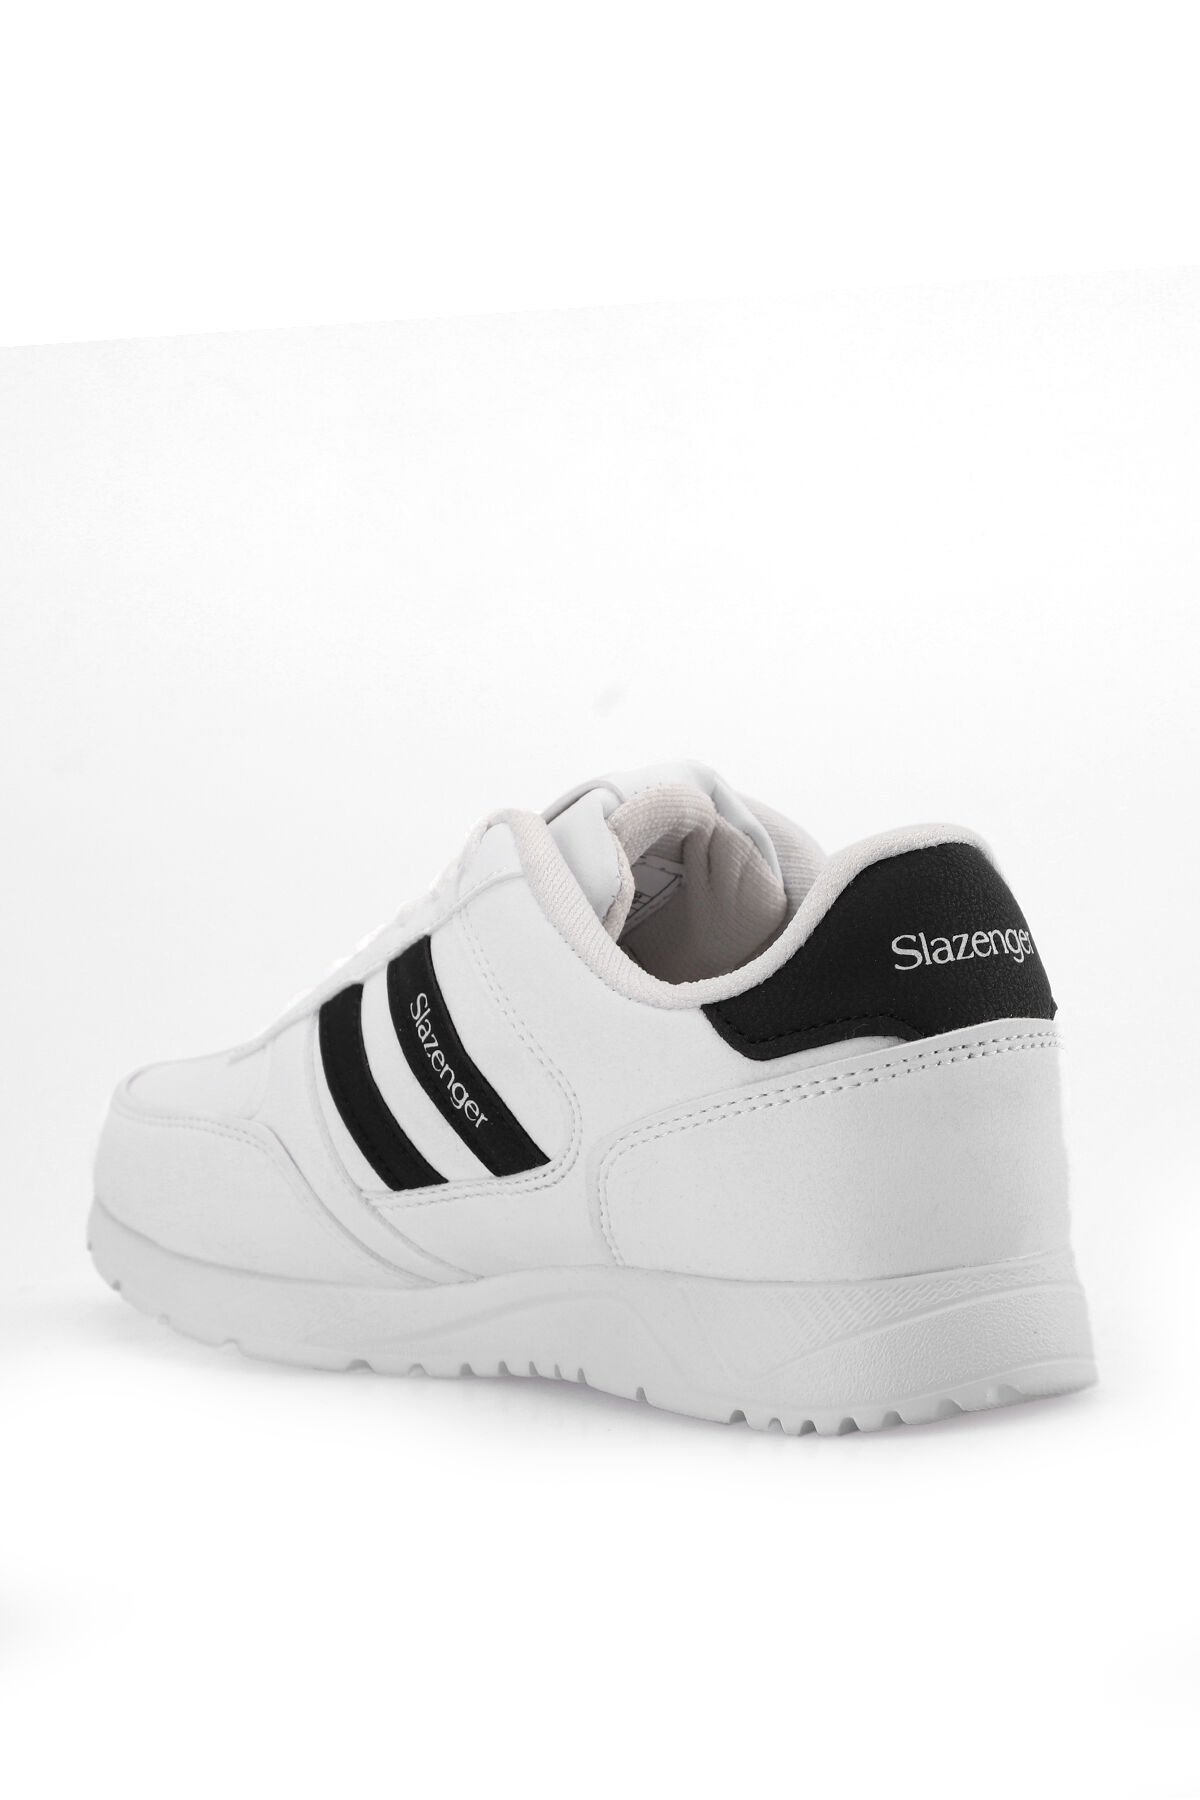 EASTERN I Sneaker Kadın Ayakkabı Beyaz - Thumbnail